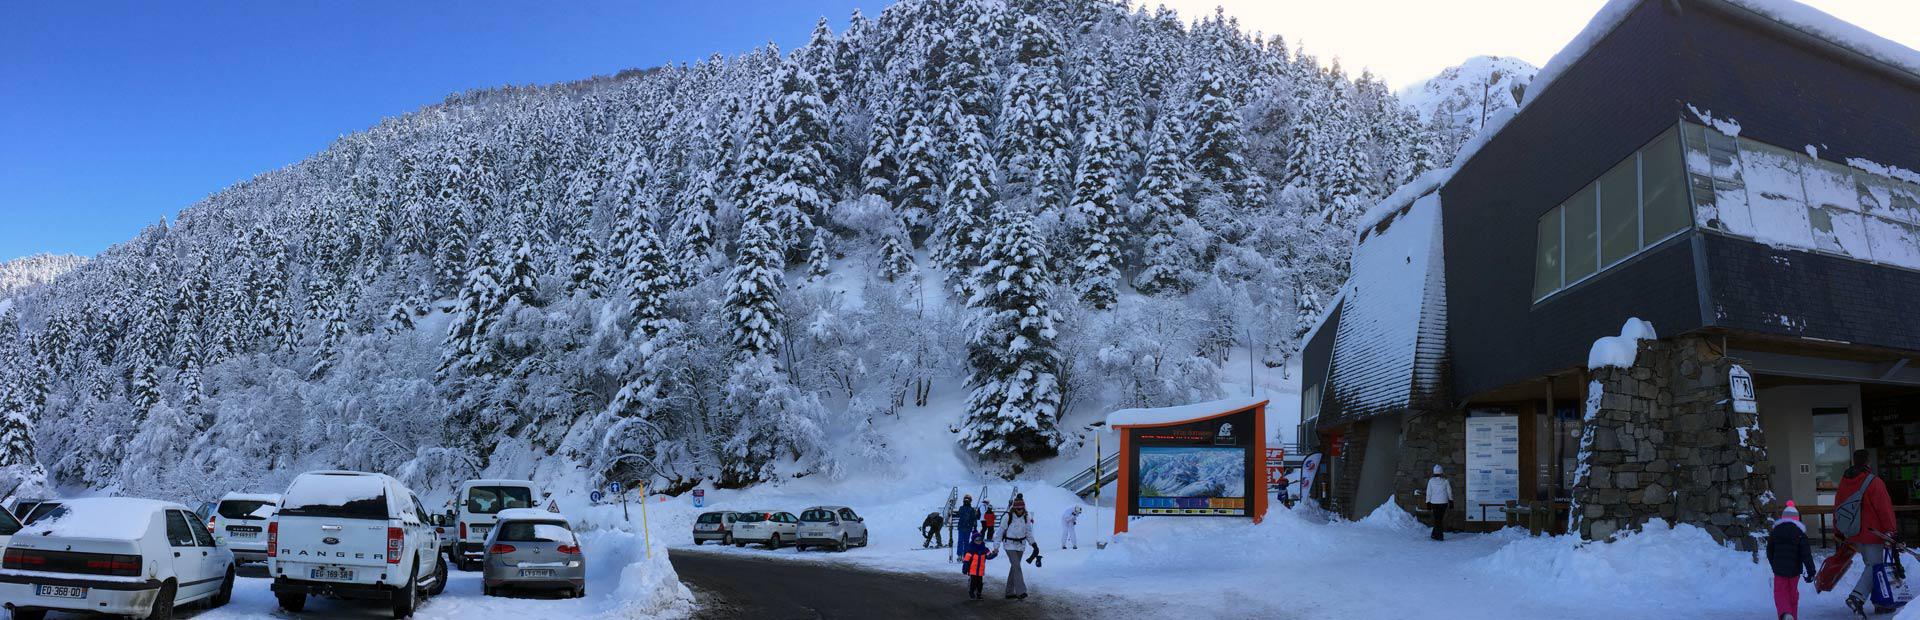 Hotel proche télécabine pour accéder aux pistes de ski hôtel Orédon Saint Lary Hautes Pyrénées proche télécabine